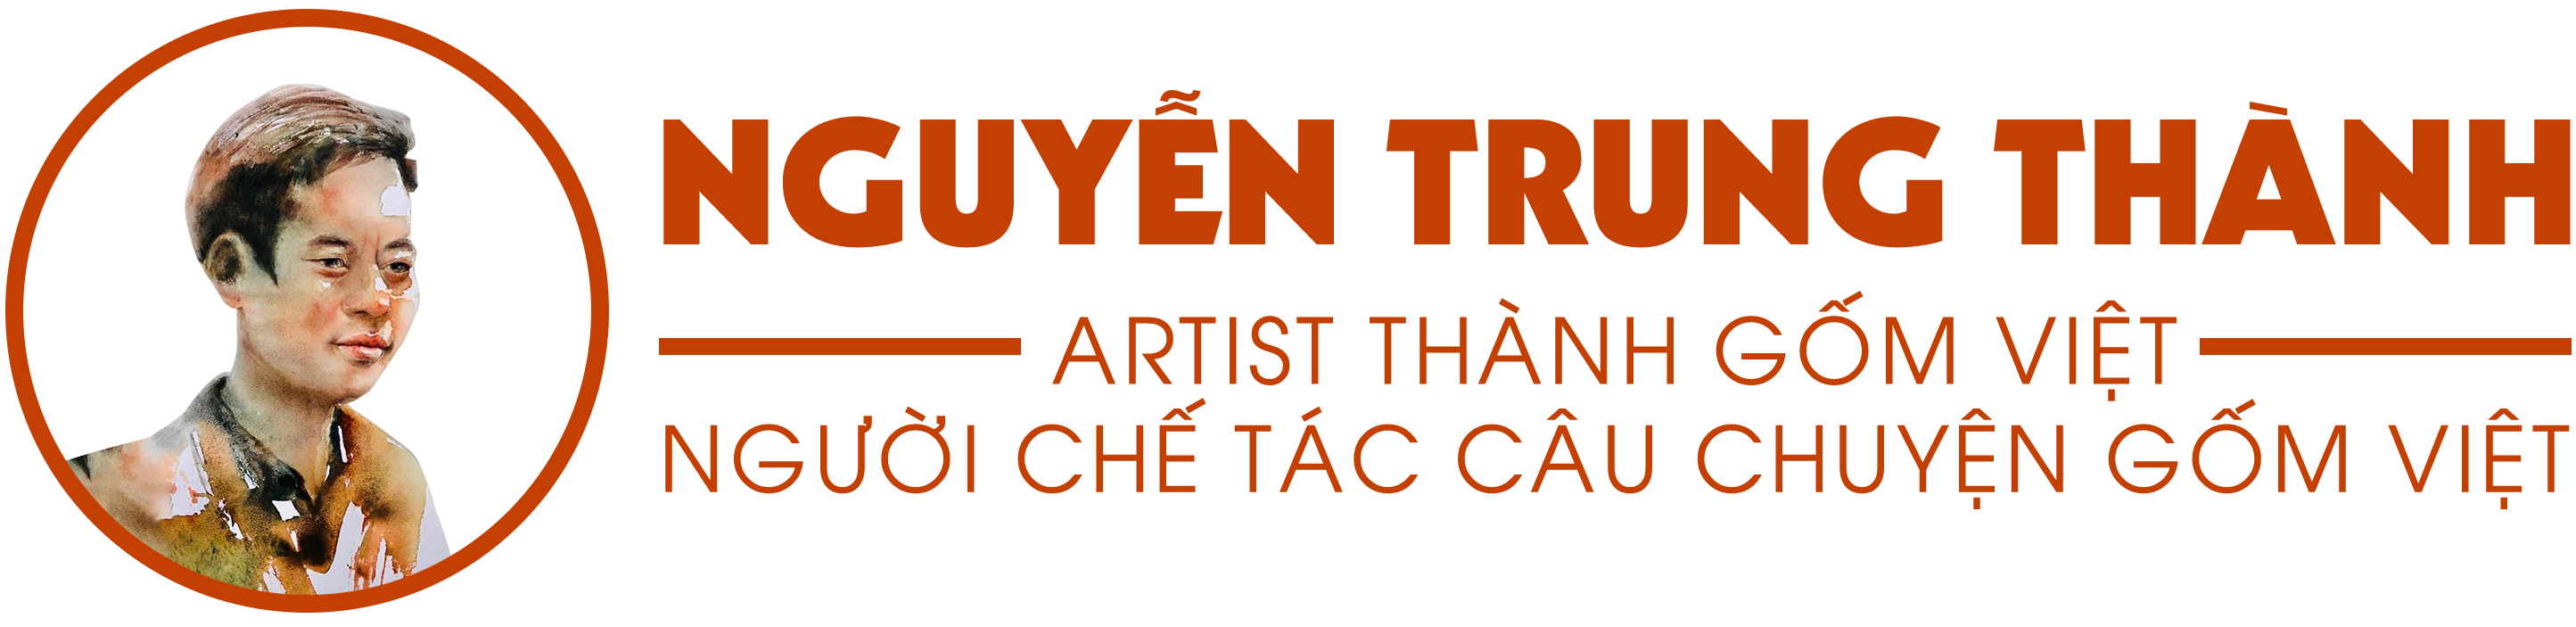 CEO Nguyễn Trung Thành (Artist Thành Gốm Việt) - Phó Chủ tịch Trung tâm Tinh hoa Làng nghề Việt, chuyên gia chuyển đổi số, đào tạo Nhân hiệu, Thương hiệu và là người chế tác câu chuyện gốm Việt Nam.